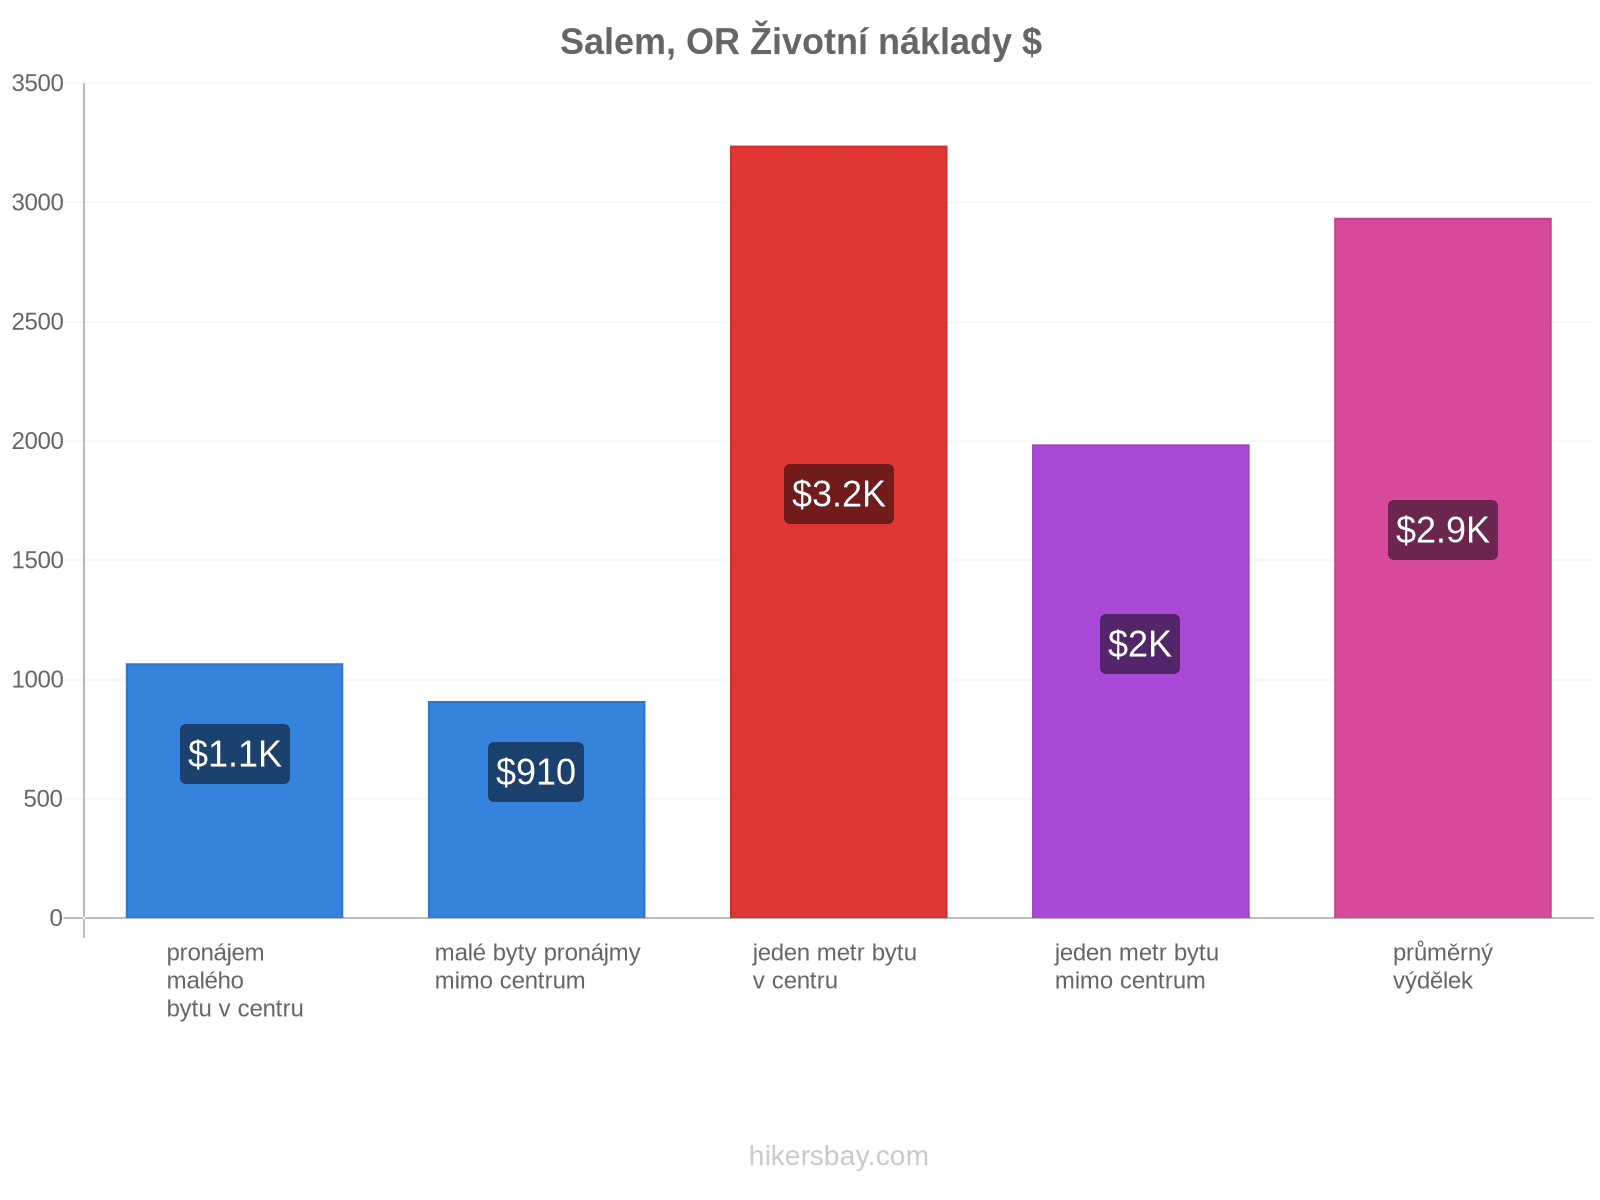 Salem, OR životní náklady hikersbay.com